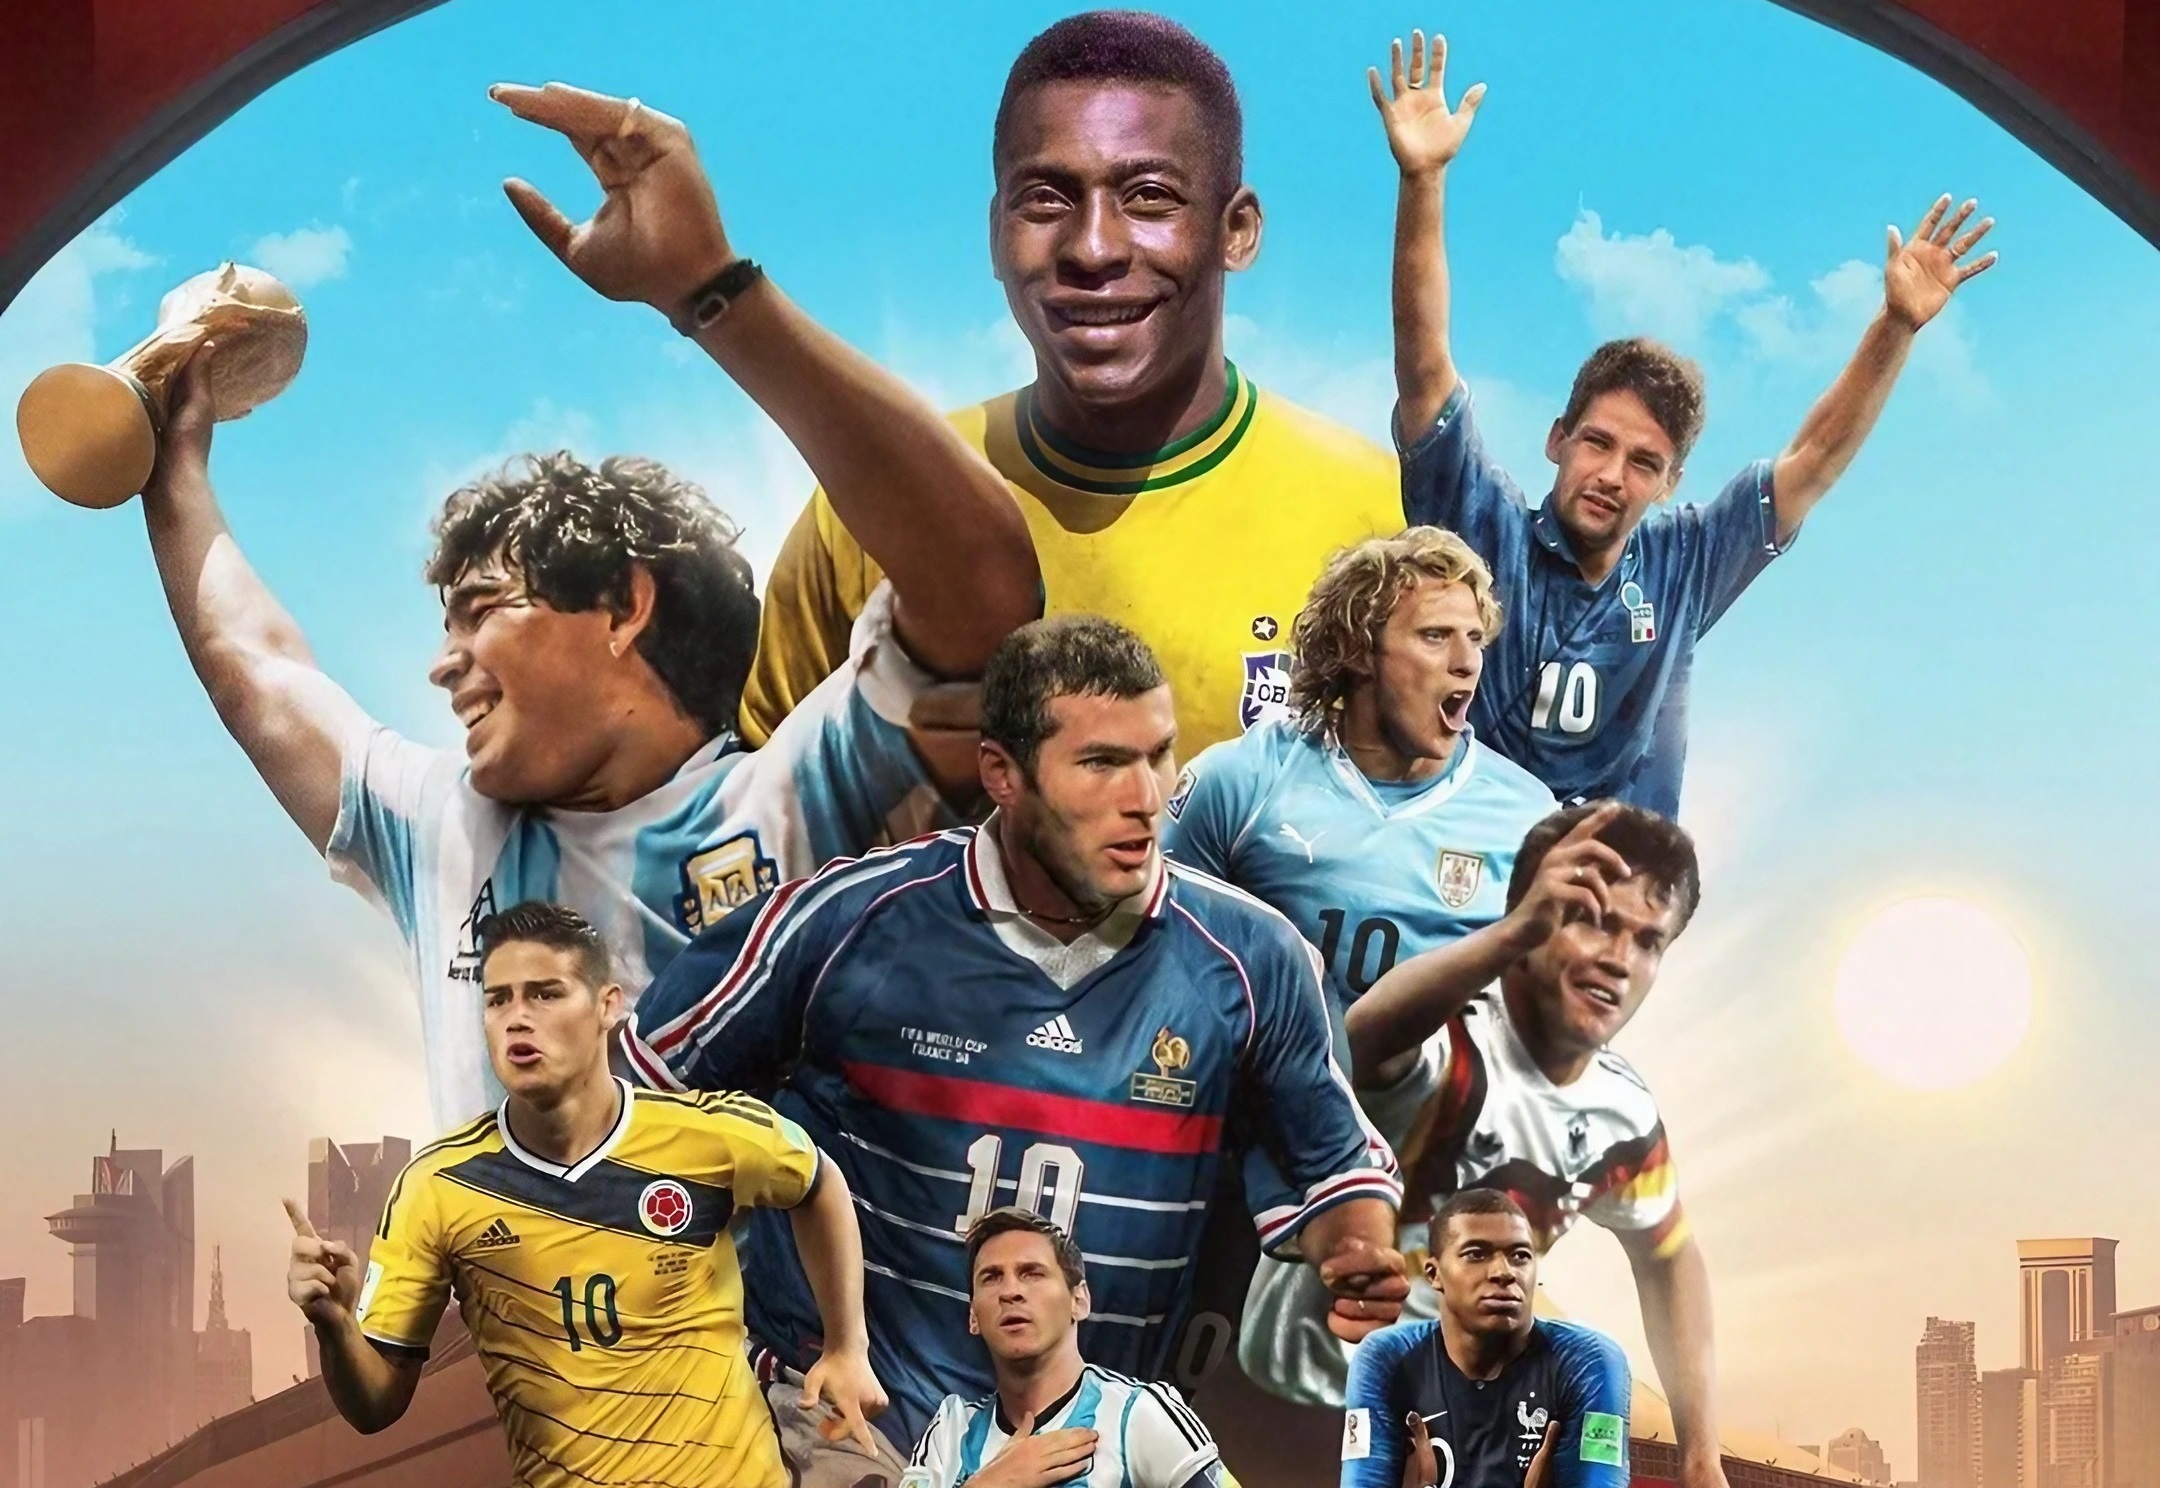 Fotomontage mit den größten Champions, die die FIFA-Weltmeisterschaft gespielt und gewonnen haben.